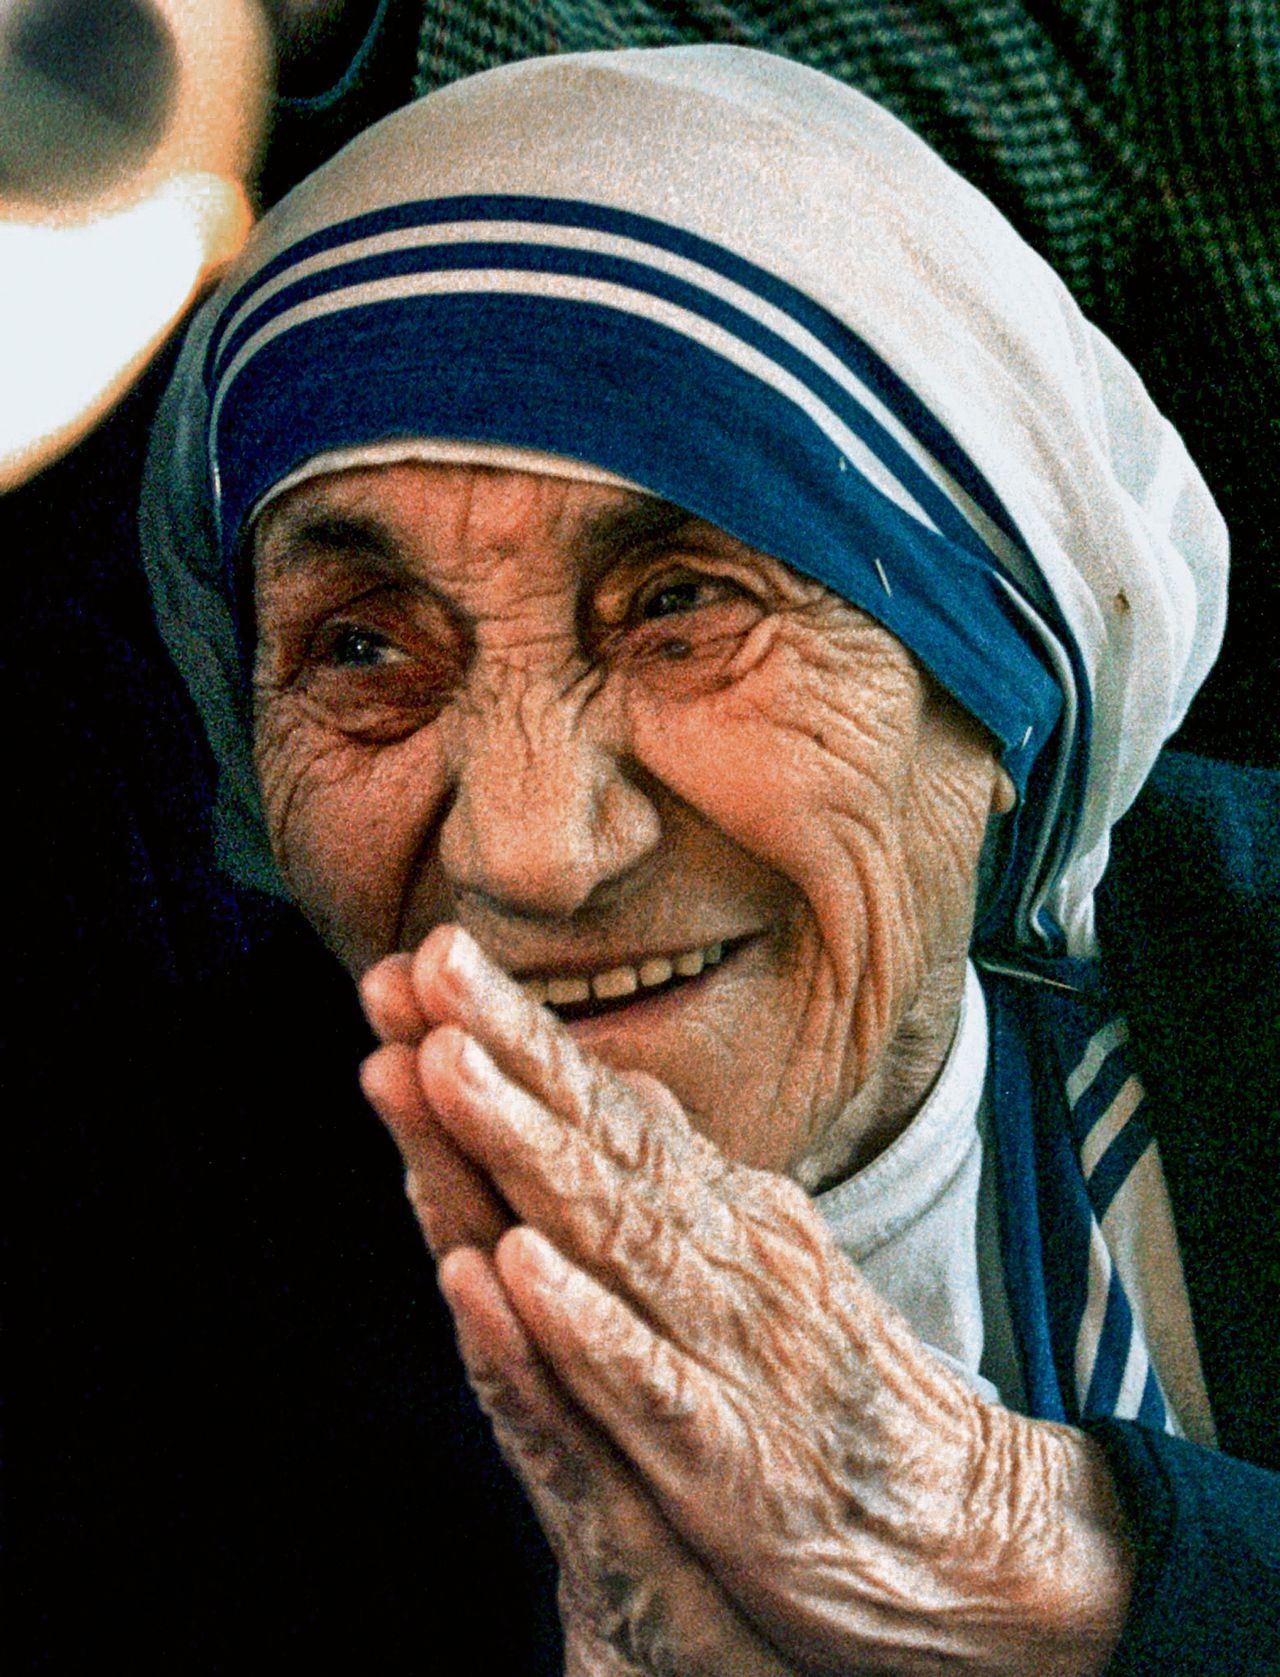 Moeder Teresa in 1997, het jaar dat ze overleed. Zondag werd ze heilig verklaard door Paus Franciscus.Foto Paolo Cocco/Reuters